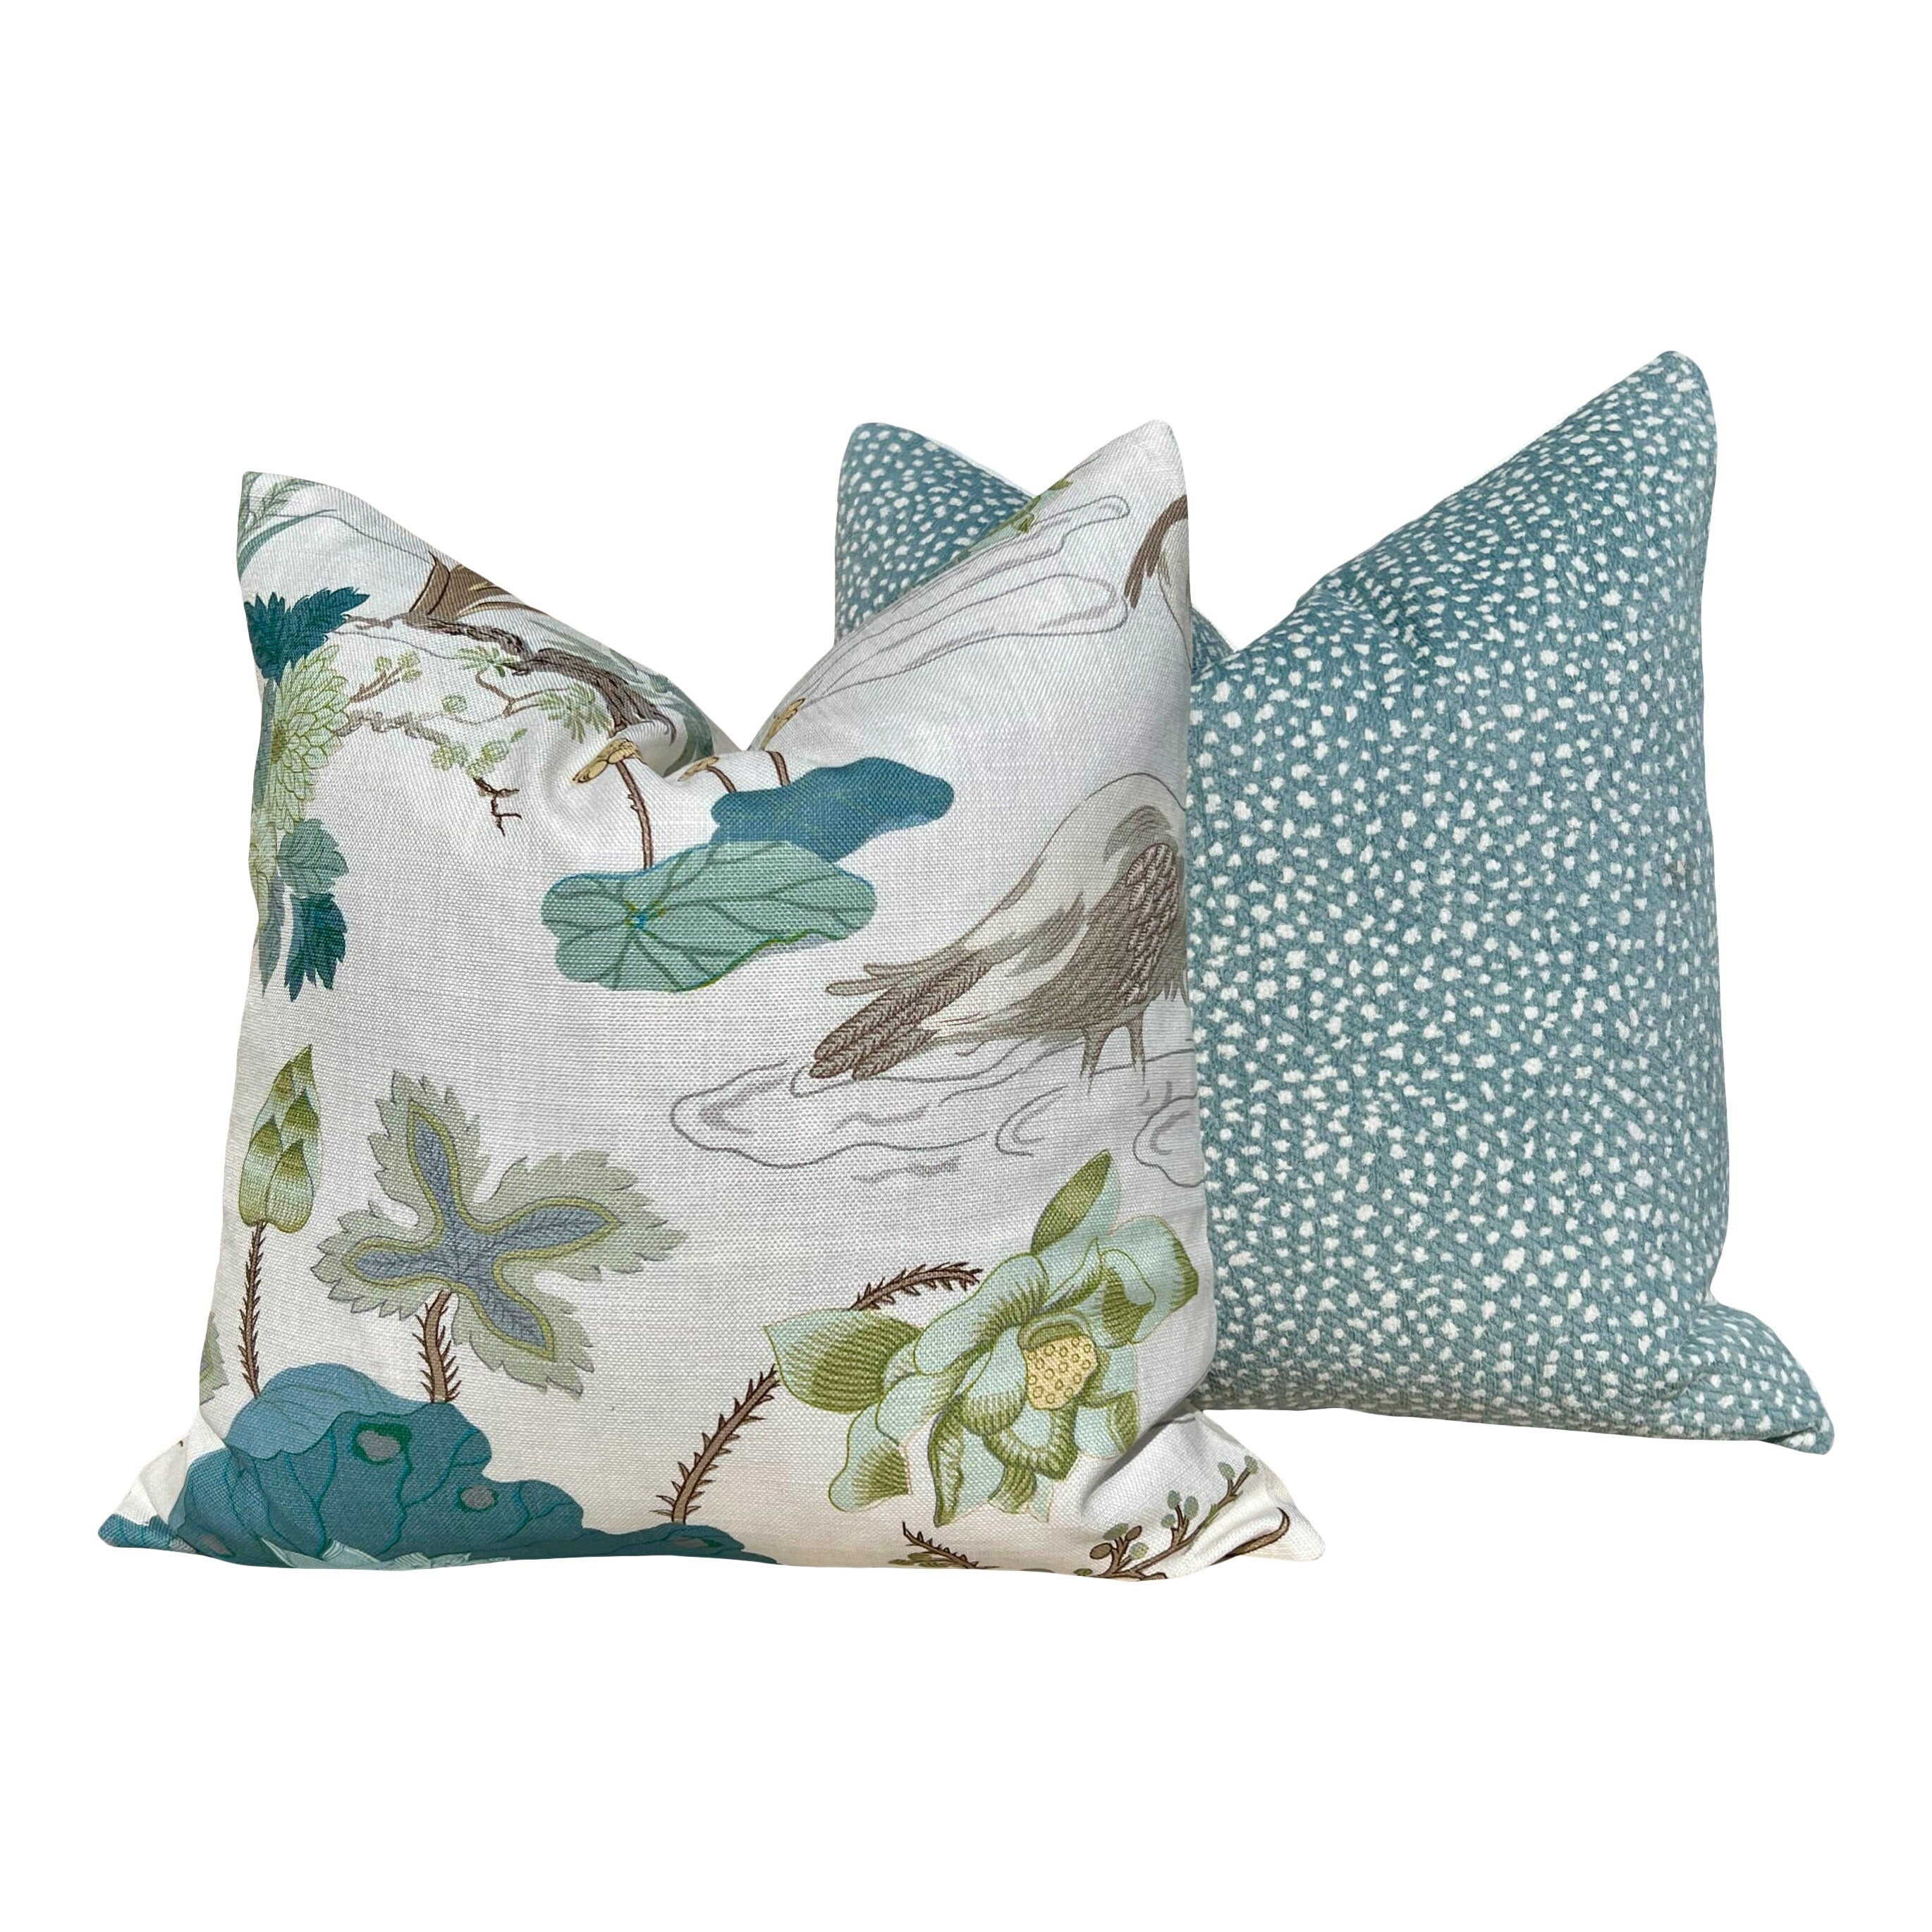 Lee Jofa Luzon Pillow in Jade. Linen Cream Green Pillows, Designer Exotic Bird Pillows, High End Pillow Covers, Luxury Botanical Pillow